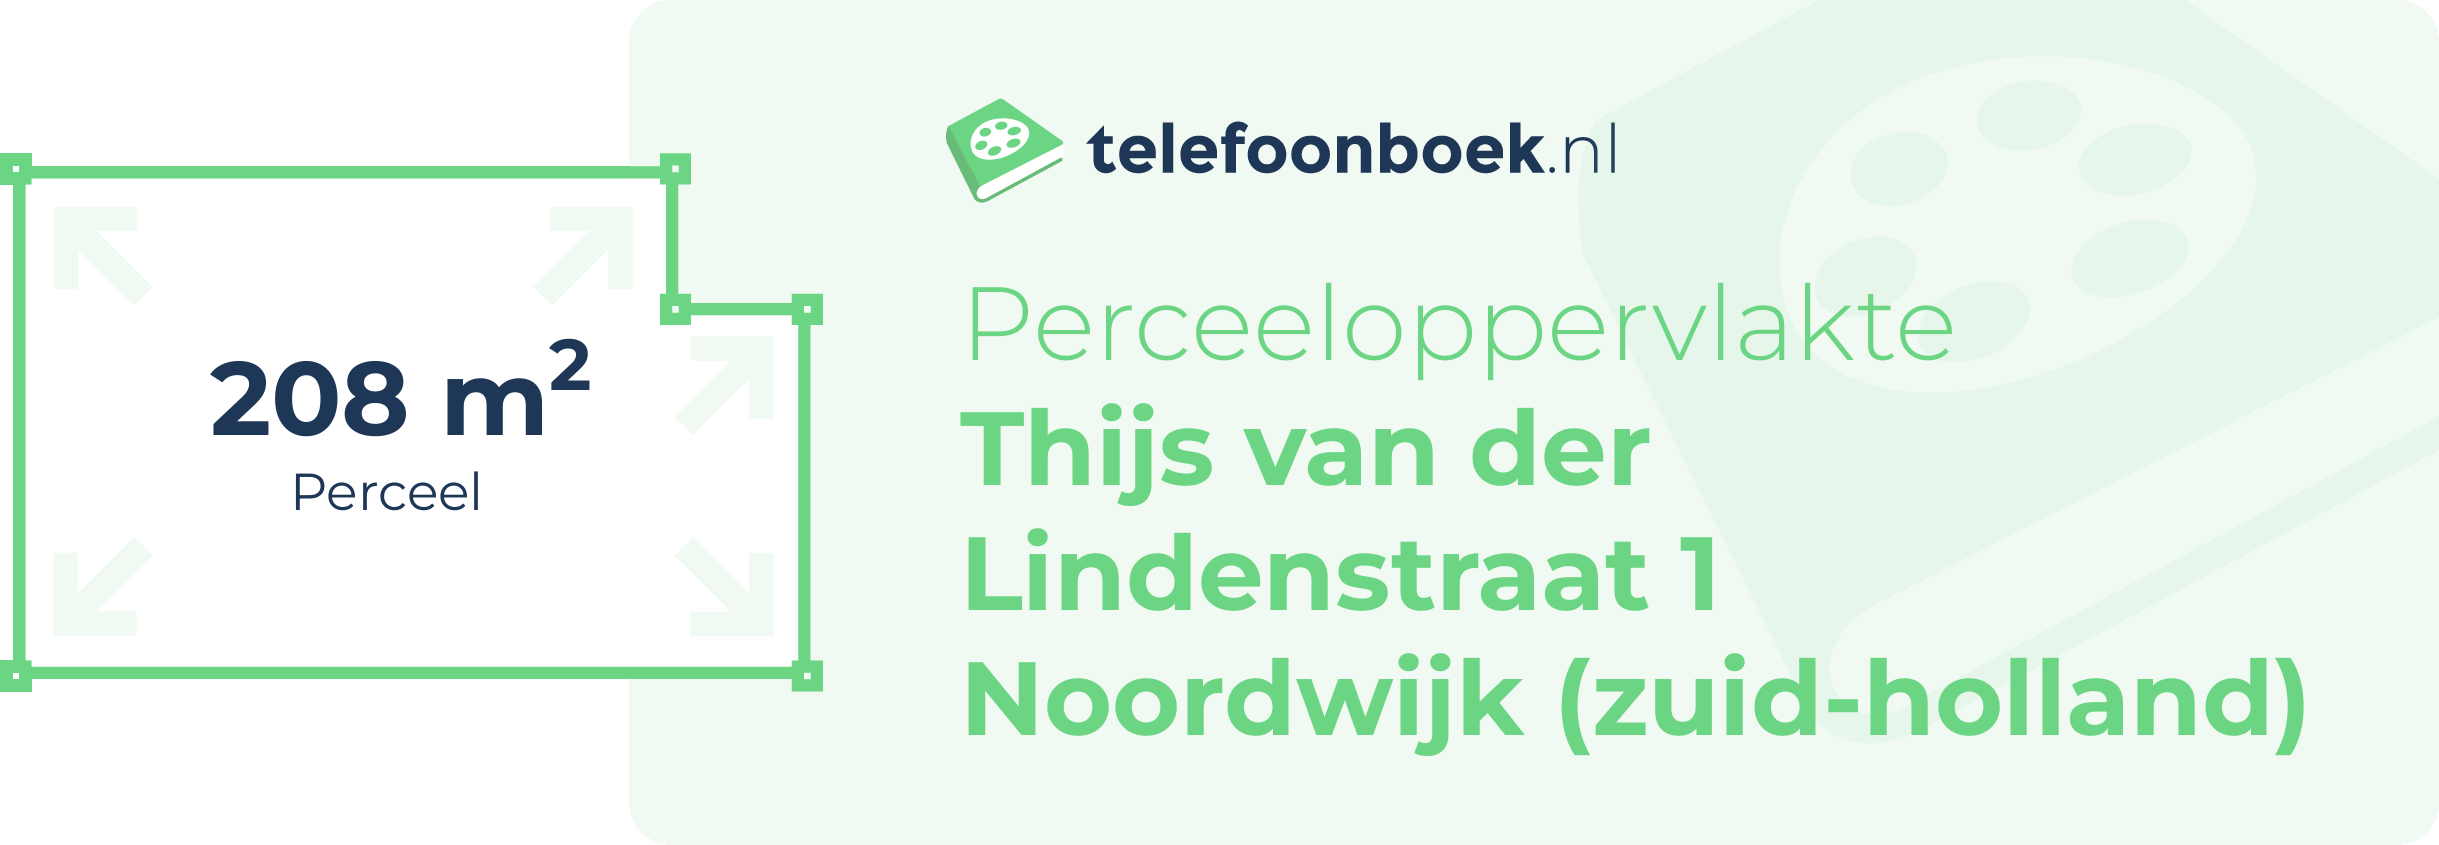 Perceeloppervlakte Thijs Van Der Lindenstraat 1 Noordwijk (Zuid-Holland)